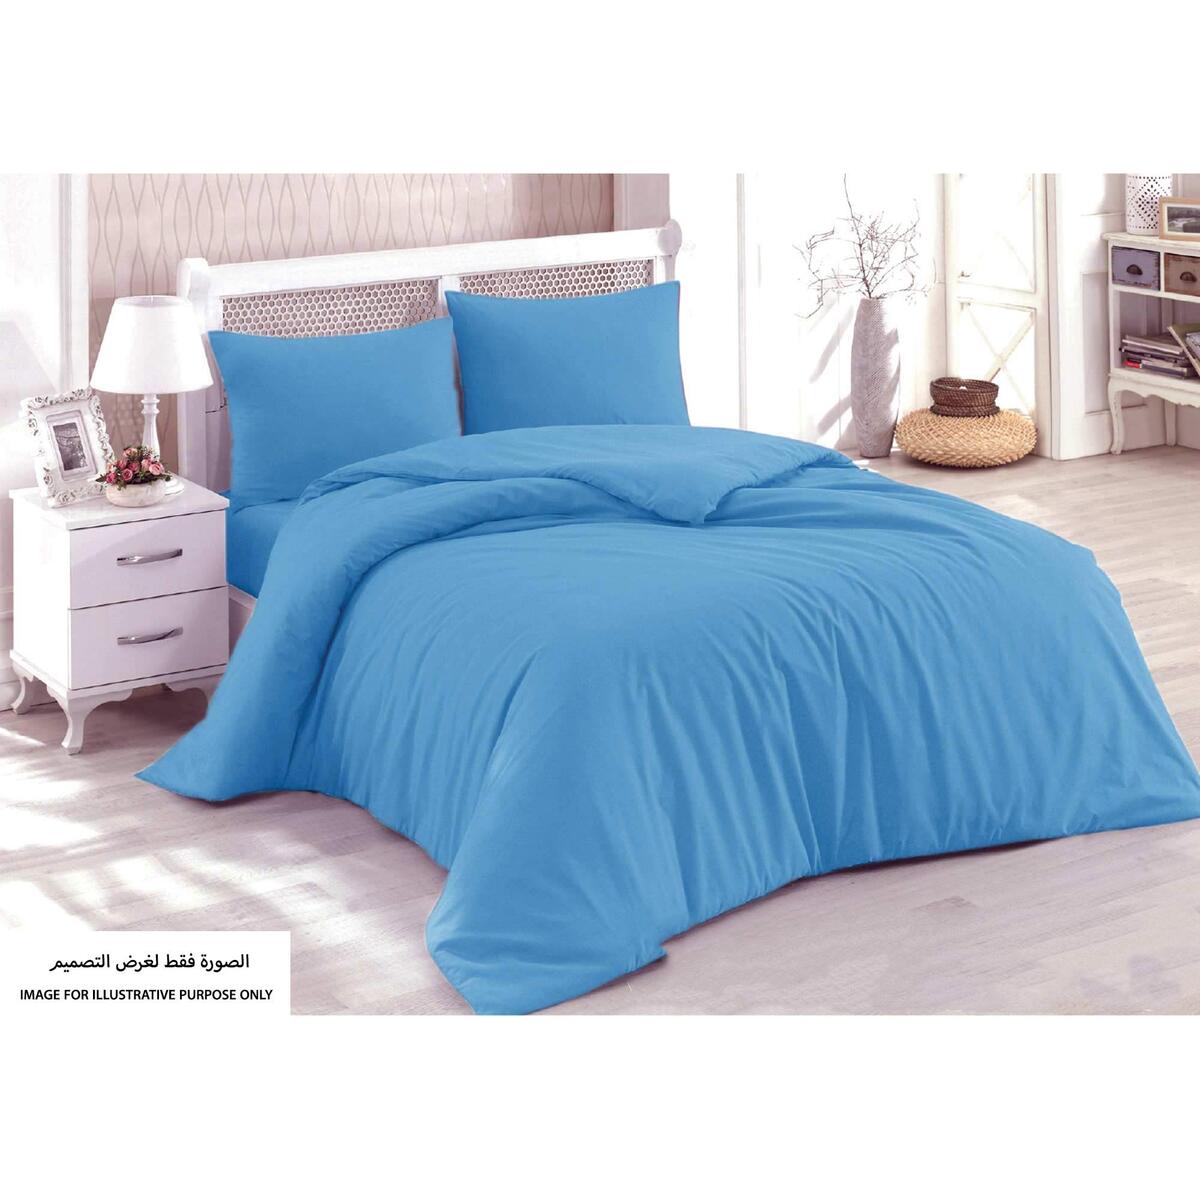 Homewell Pillow Case 2 pc Set Blue